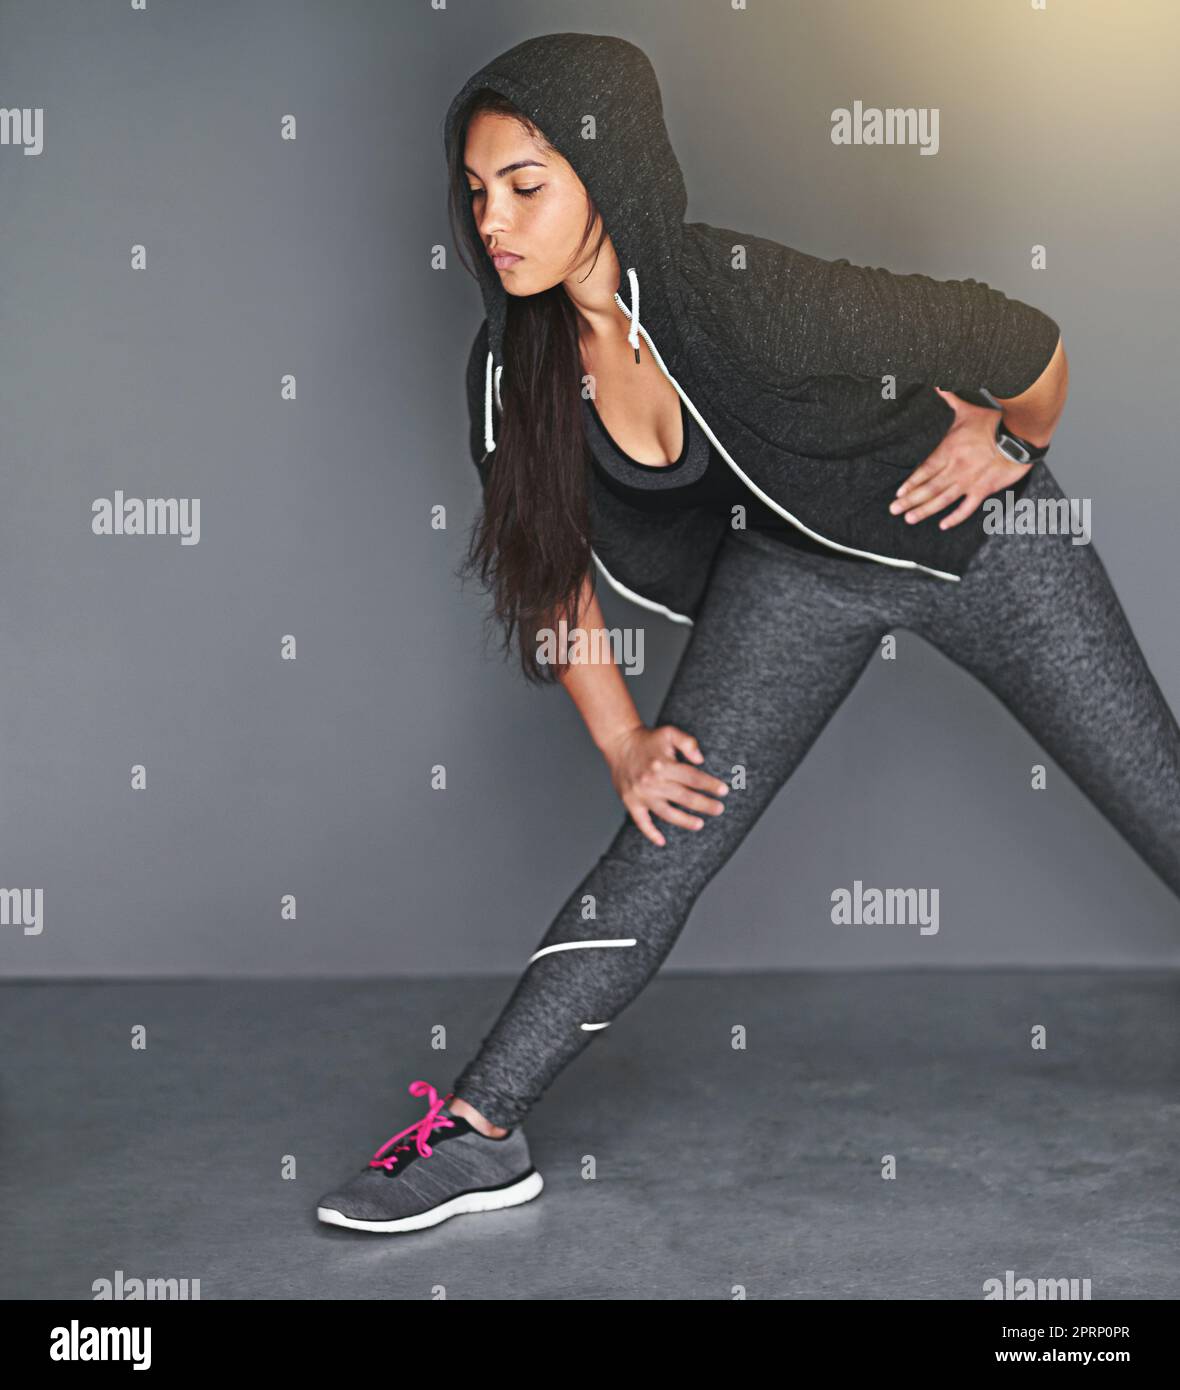 Stendendo i muscoli delle gambe. Una giovane donna in forma che stenderà le gambe su uno sfondo grigio. Foto Stock